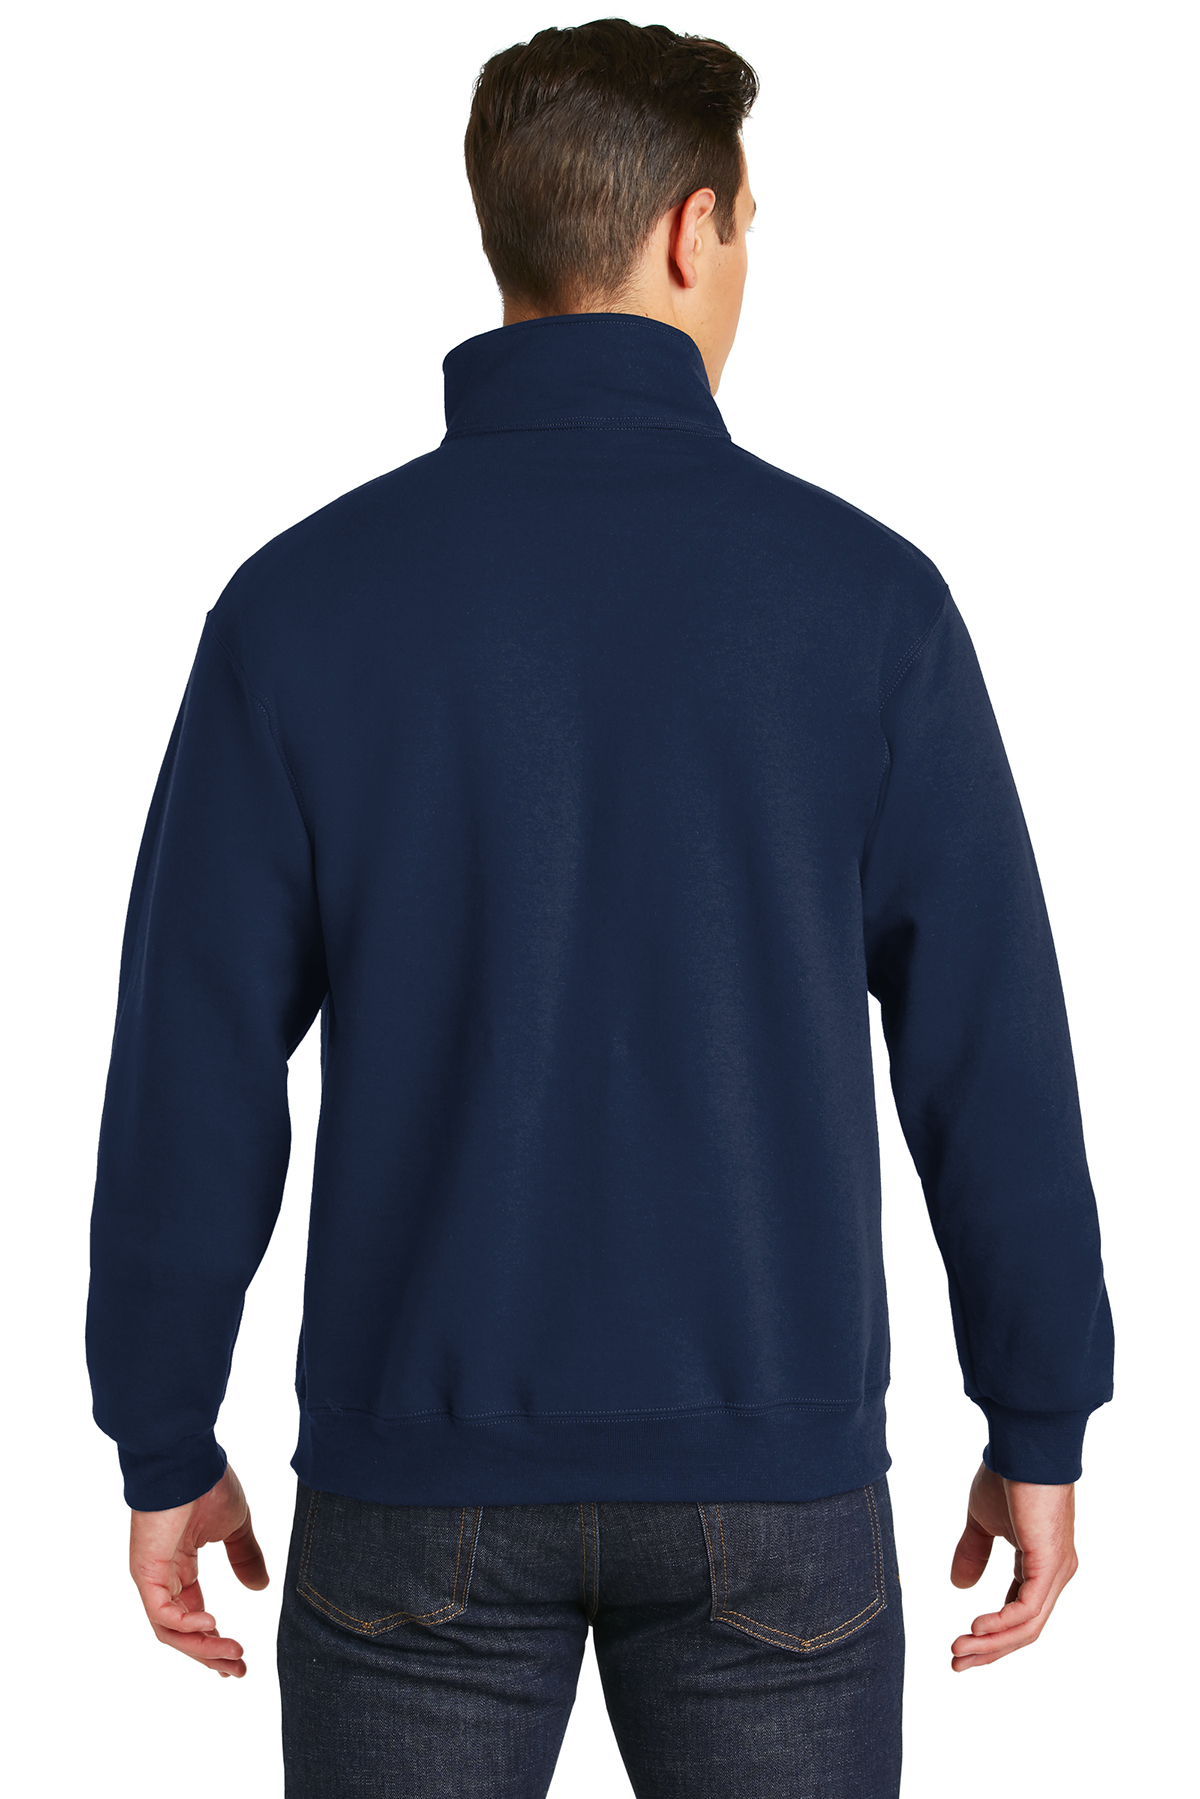 Jerzees Super Sweats NuBlend - 1/4-Zip Sweatshirt with Cadet 